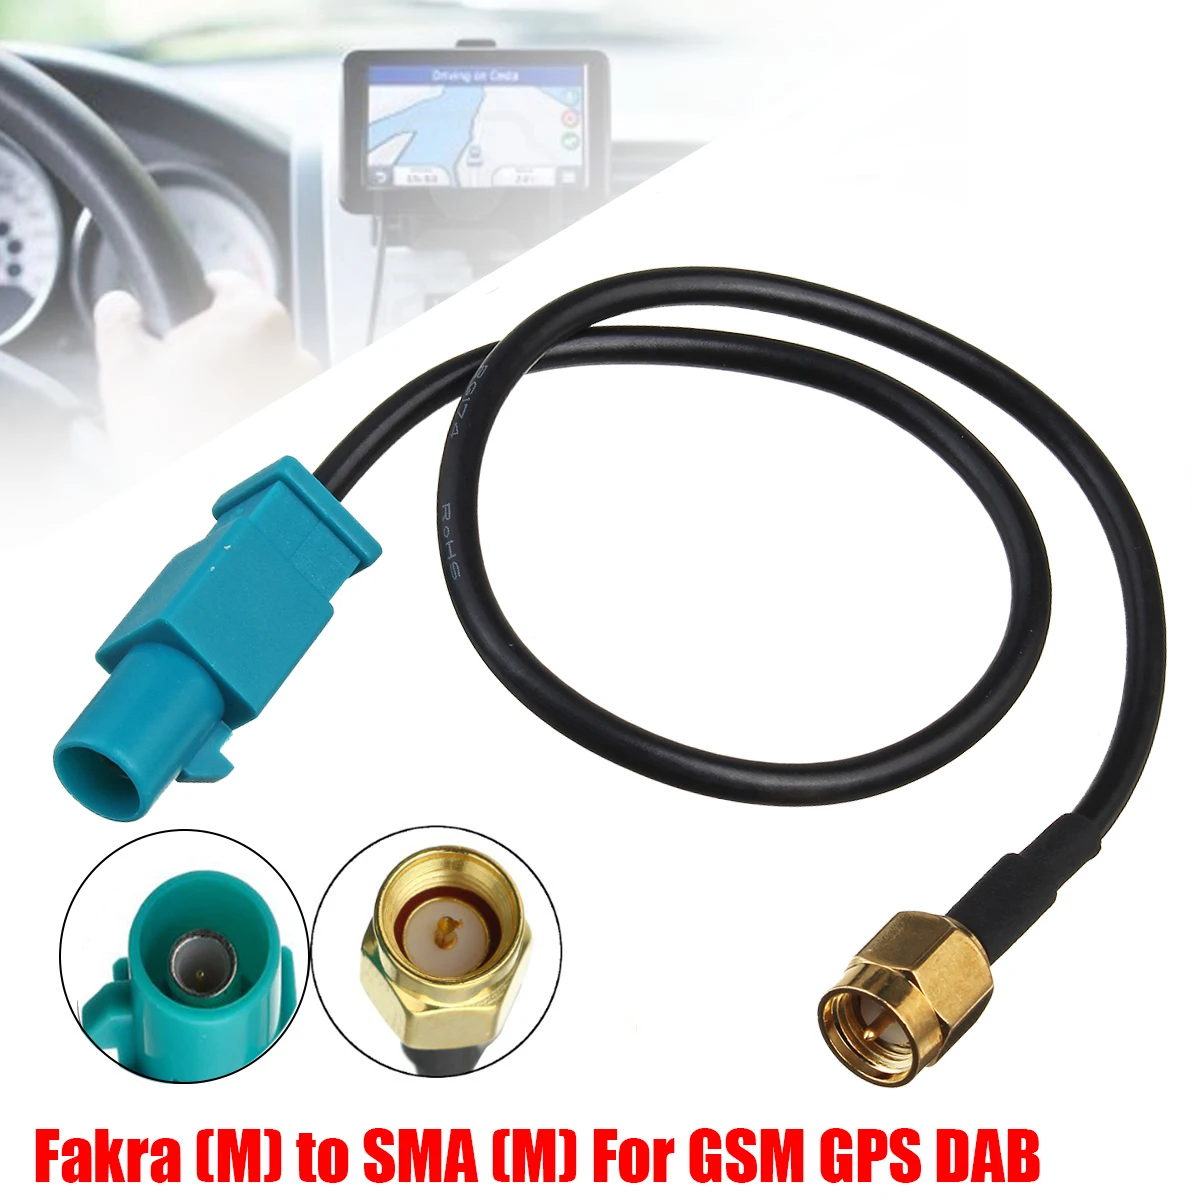 Штекер антенного адаптера Fakra Z (M) -SMA (M), соединительный кабель для автомобиля, GSM GPS, DAB, 21,5 см, 1 шт.